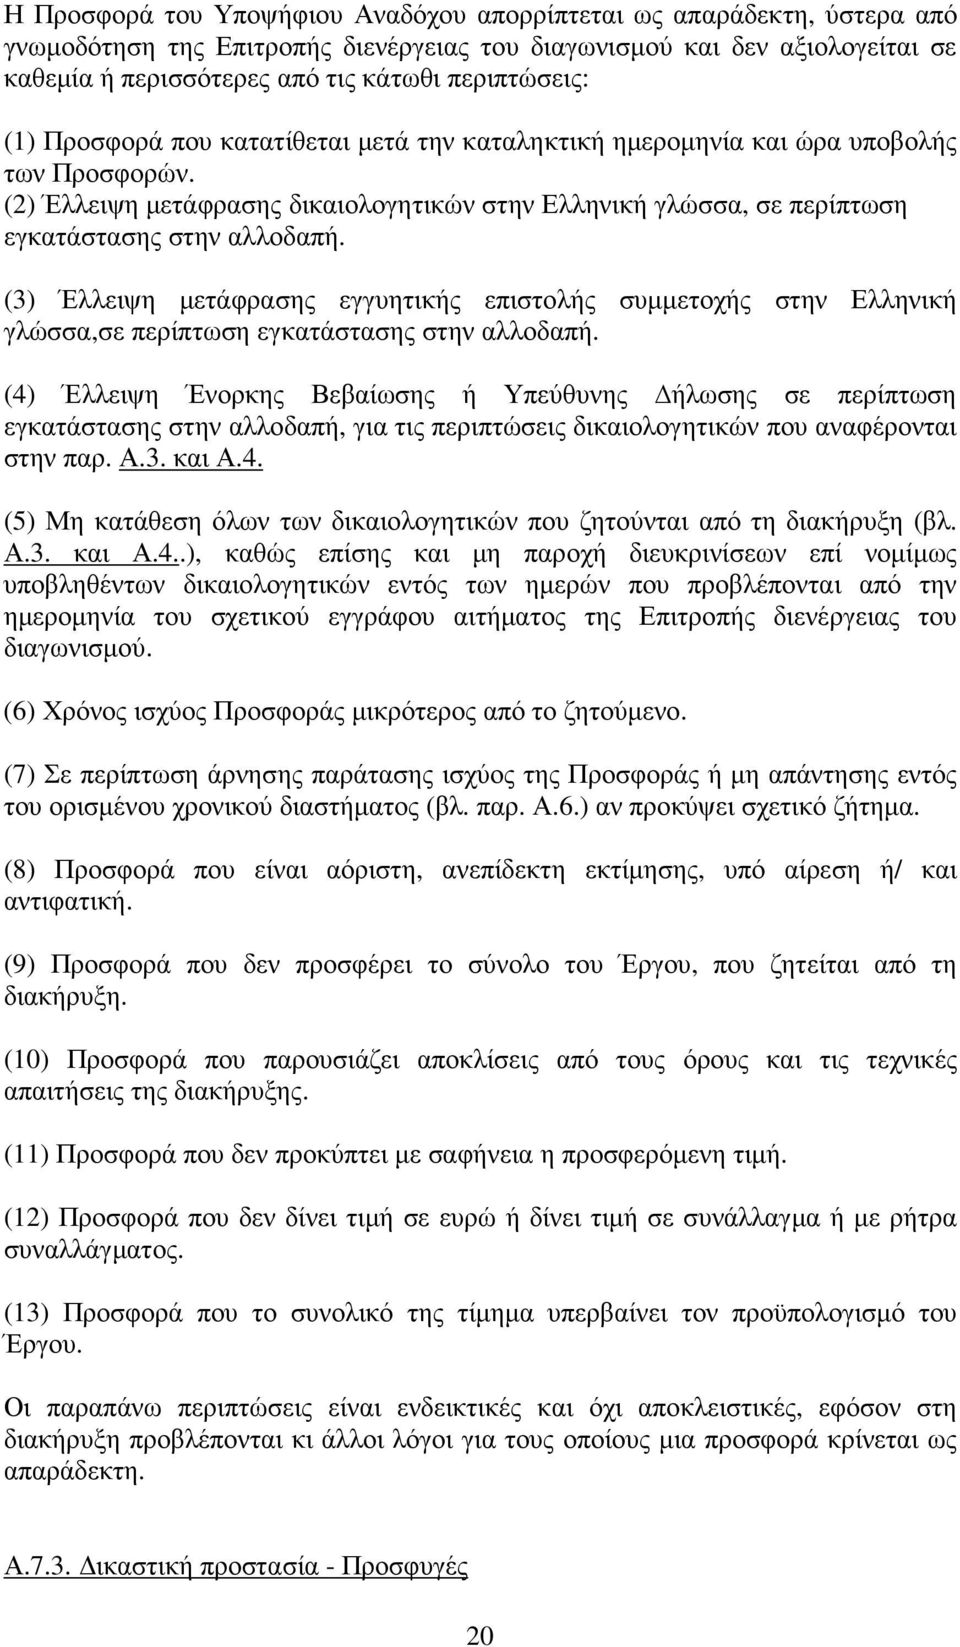 (2) Έλλειψη µετάφρασης δικαιολογητικών στην Ελληνική γλώσσα, σε περίπτωση εγκατάστασης στην αλλοδαπή.